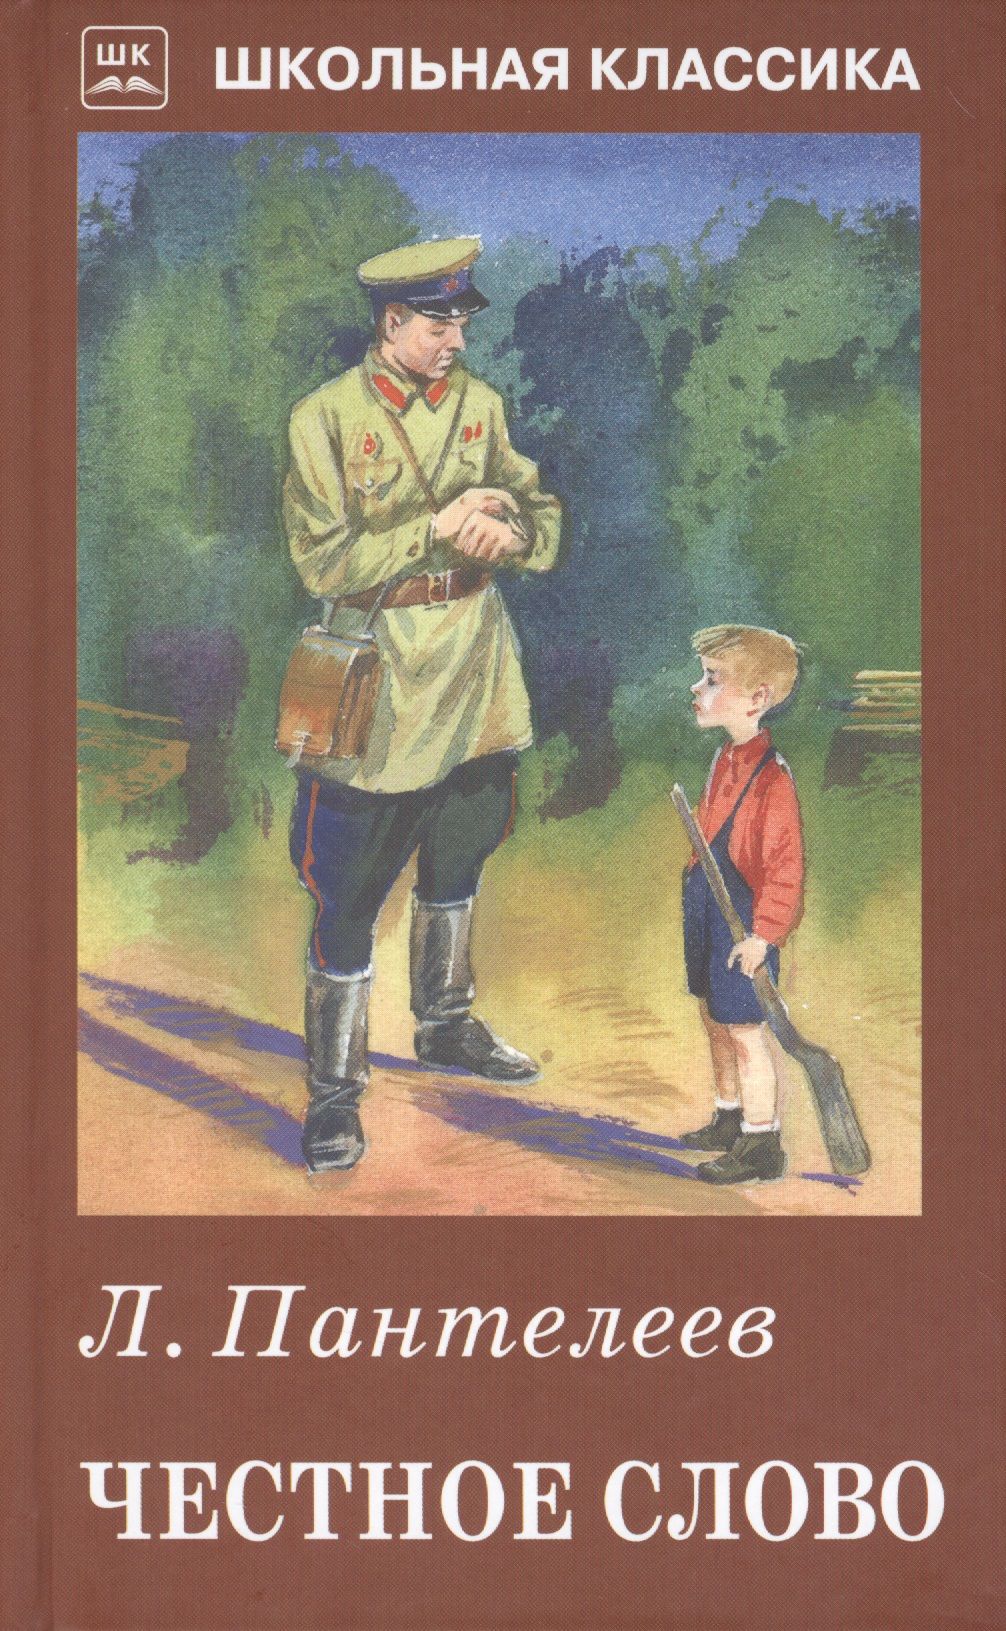 Честный история жизни. «Честное слово» л. Пантелеева (1941).